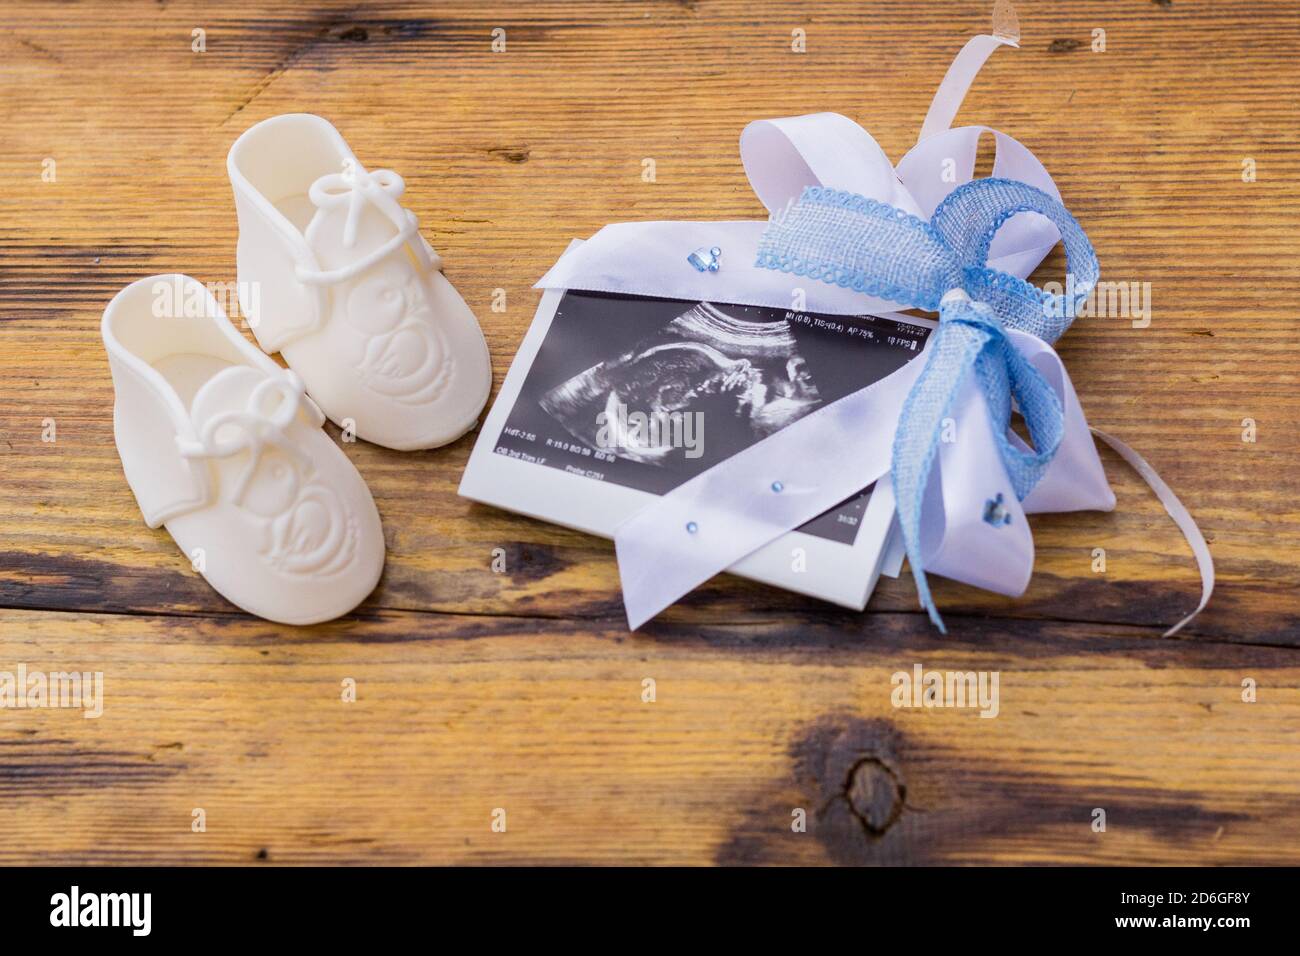 Botas White Baby con lazo azul alrededor de la imagen ecográfica en superficie de madera rústica, revelación de género o concepto de anuncio de embarazo Foto de stock